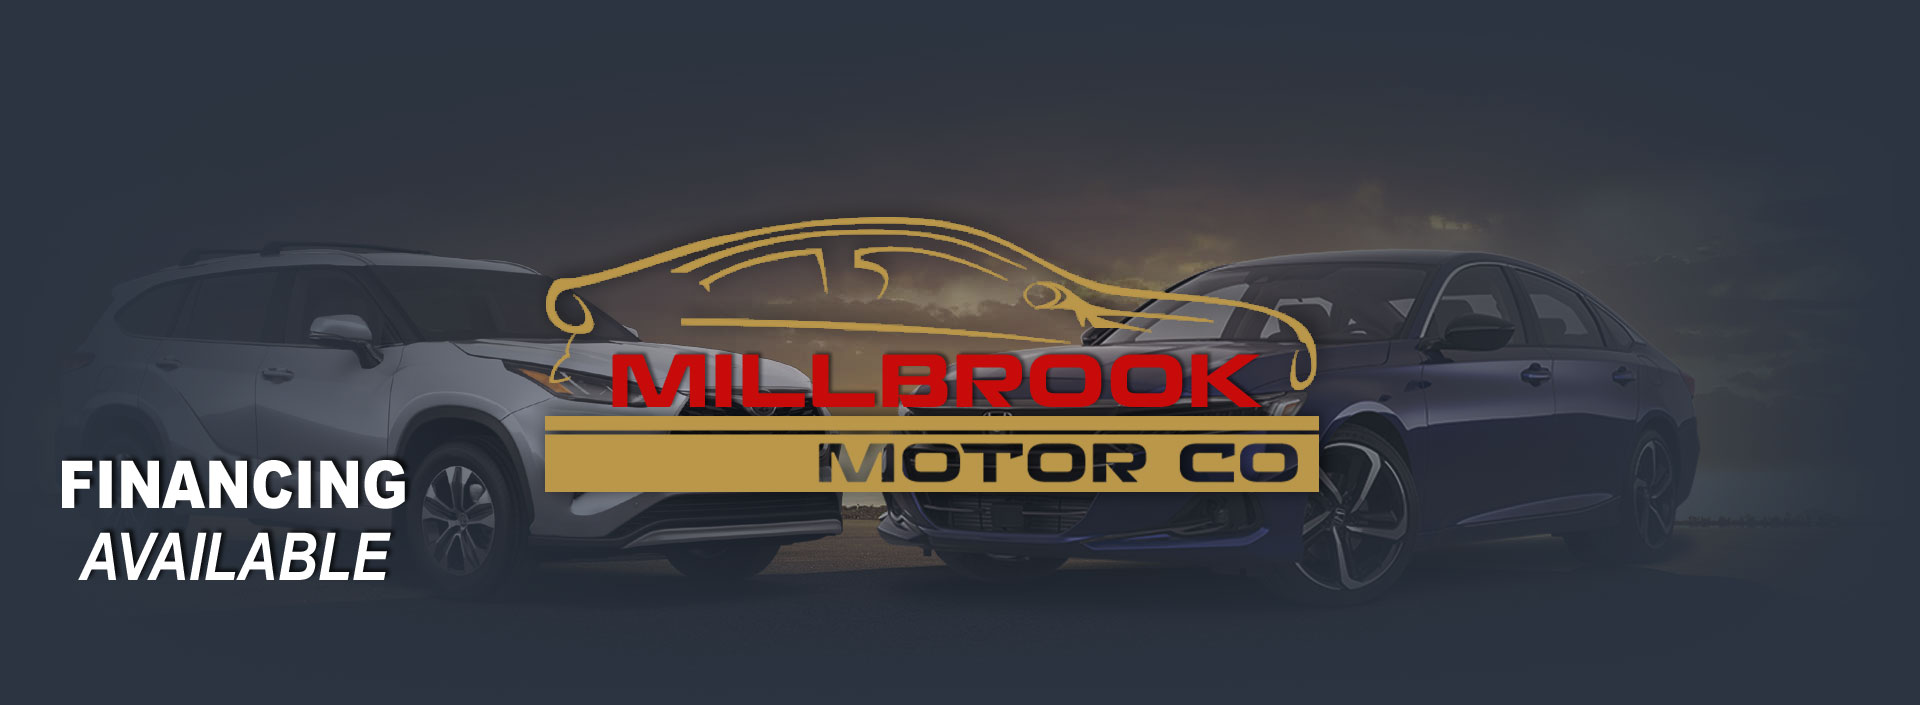 Millbrook Motor Co